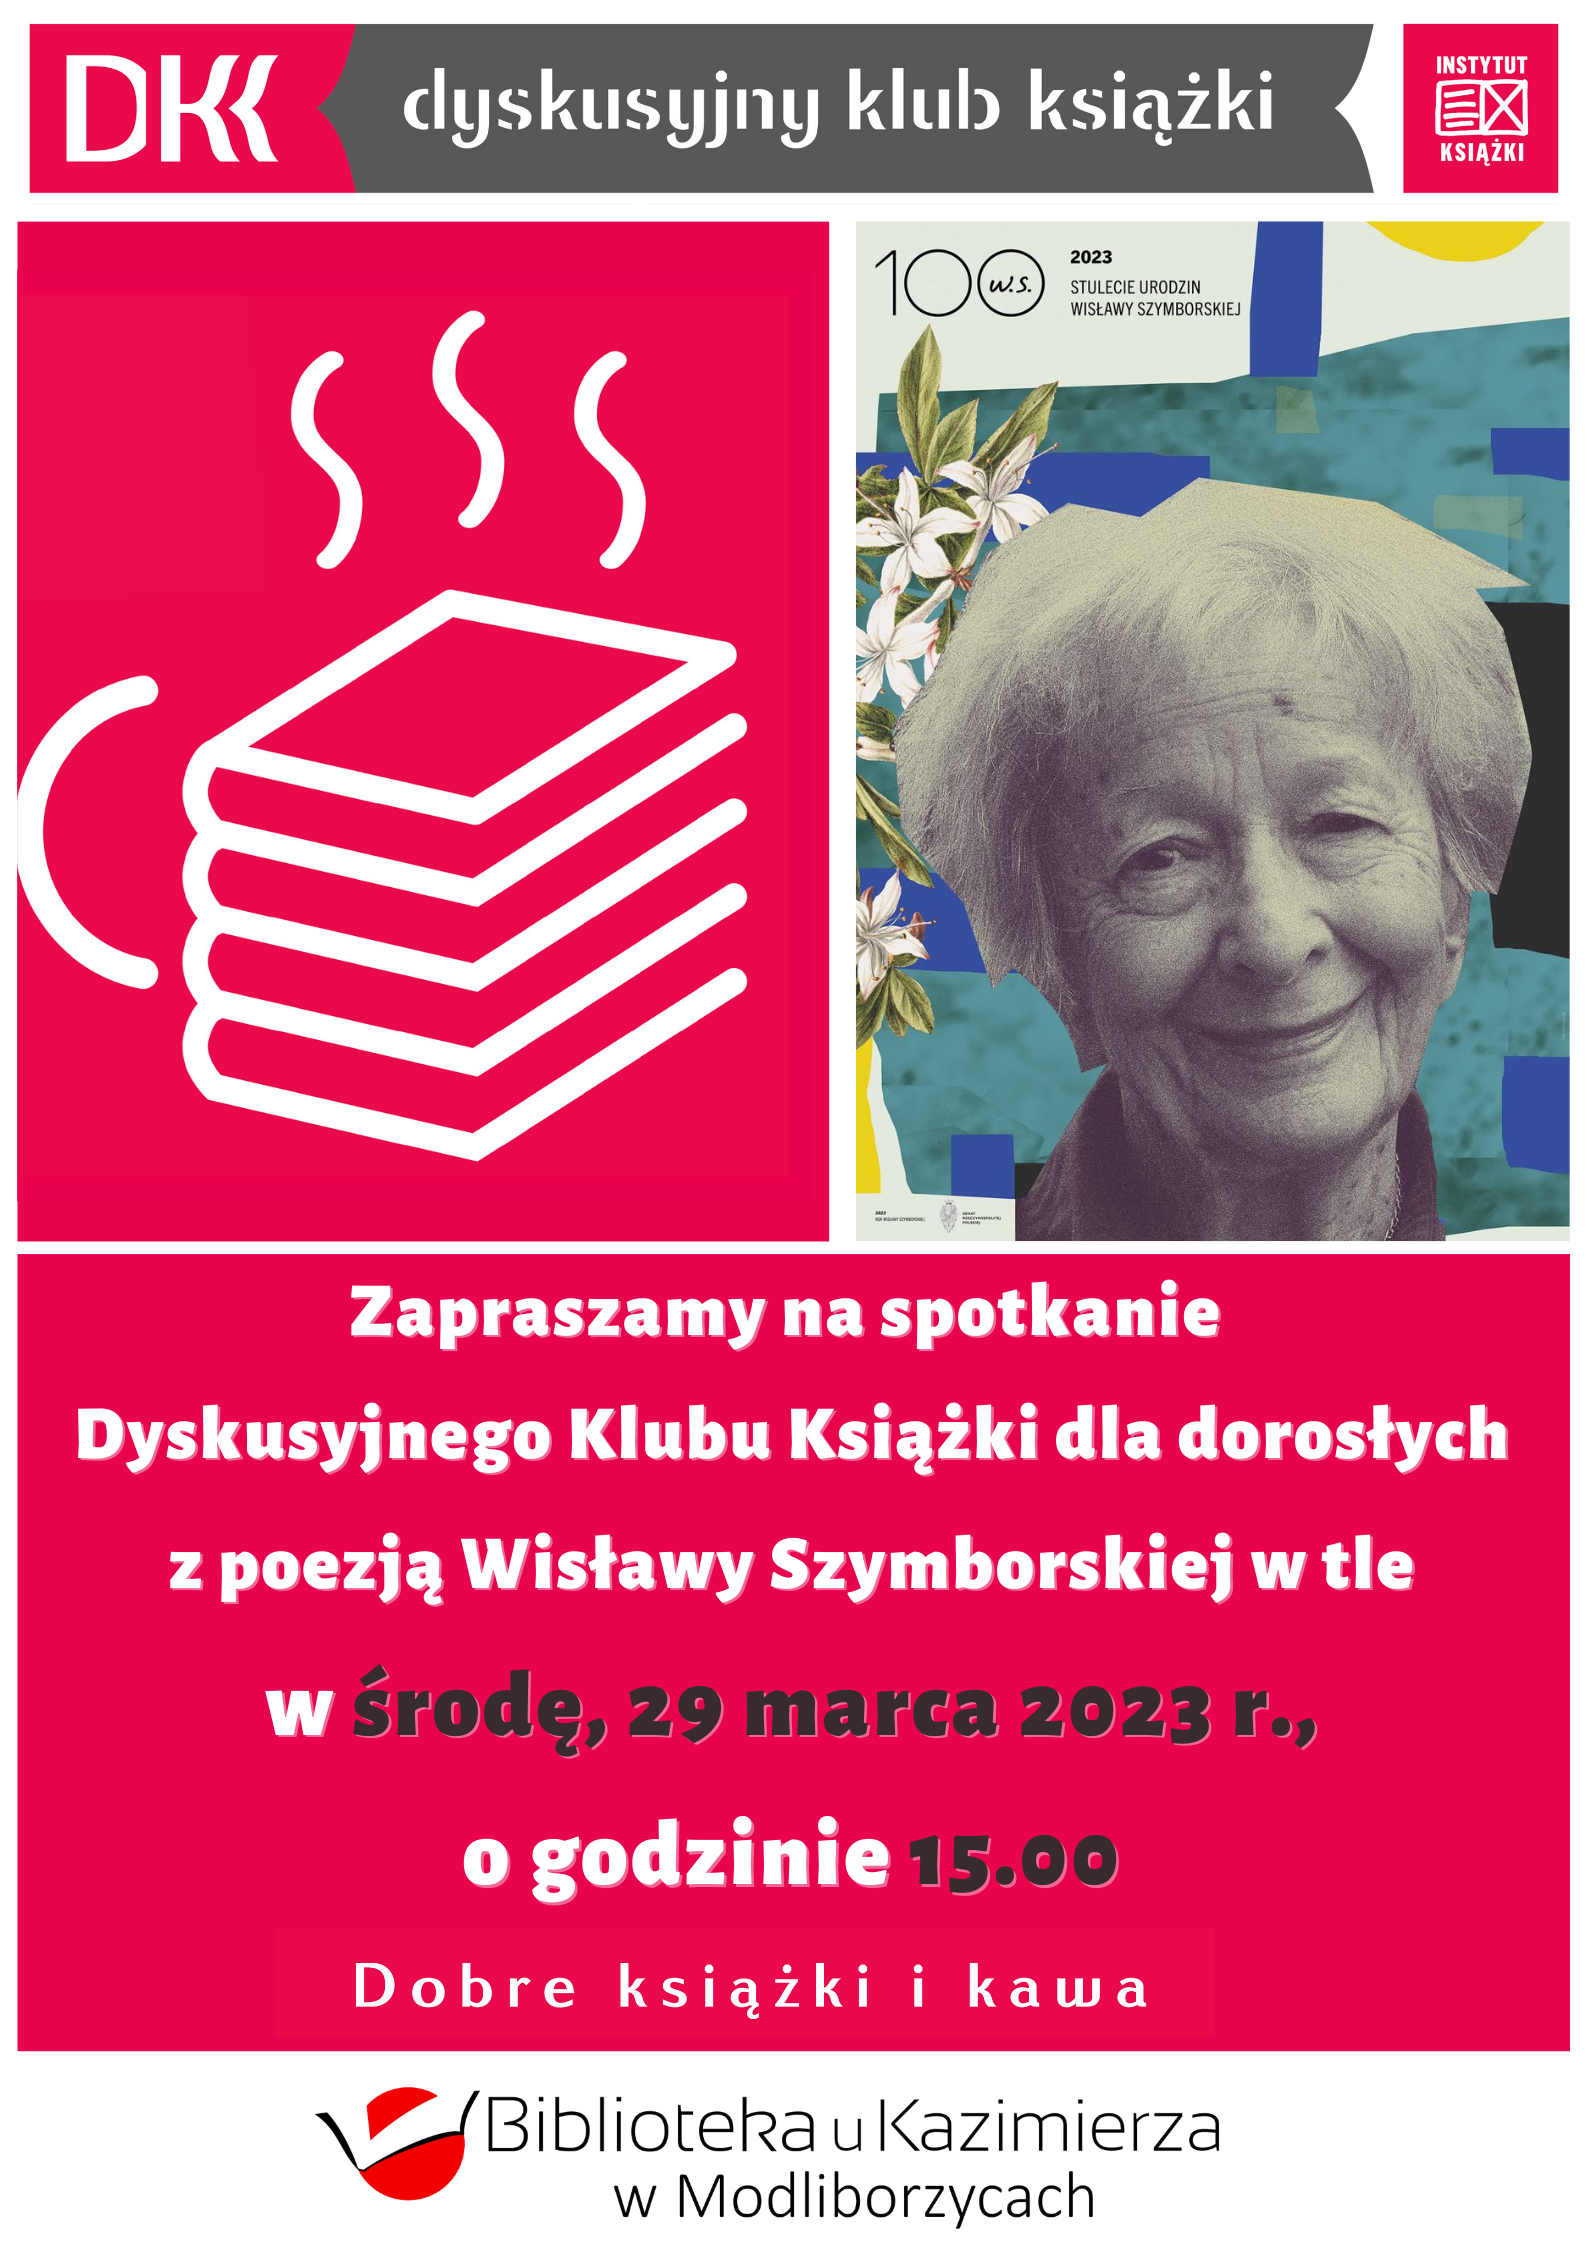 Zapraszamy na spotkanie Dyskusyjnego Klubu Książki dla dorosłych z poezją Wisławy Szymborskiej w tle w środę, 29 marca 2023 r., o godzinie 15.00! 